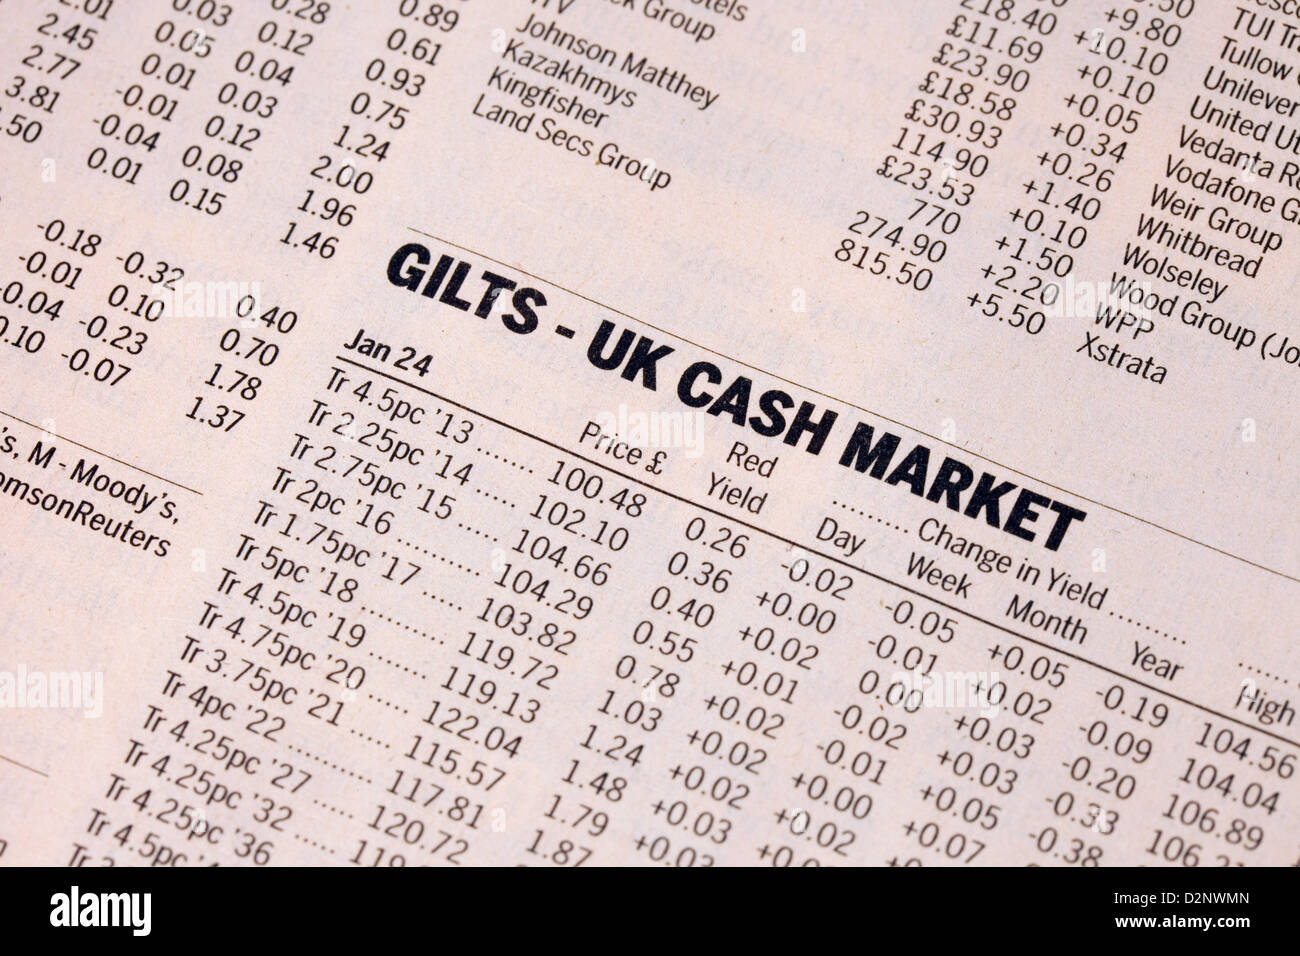 Les cochettes - UK - les valeurs du marché au comptant dans le journal Financial Times, UK Banque D'Images